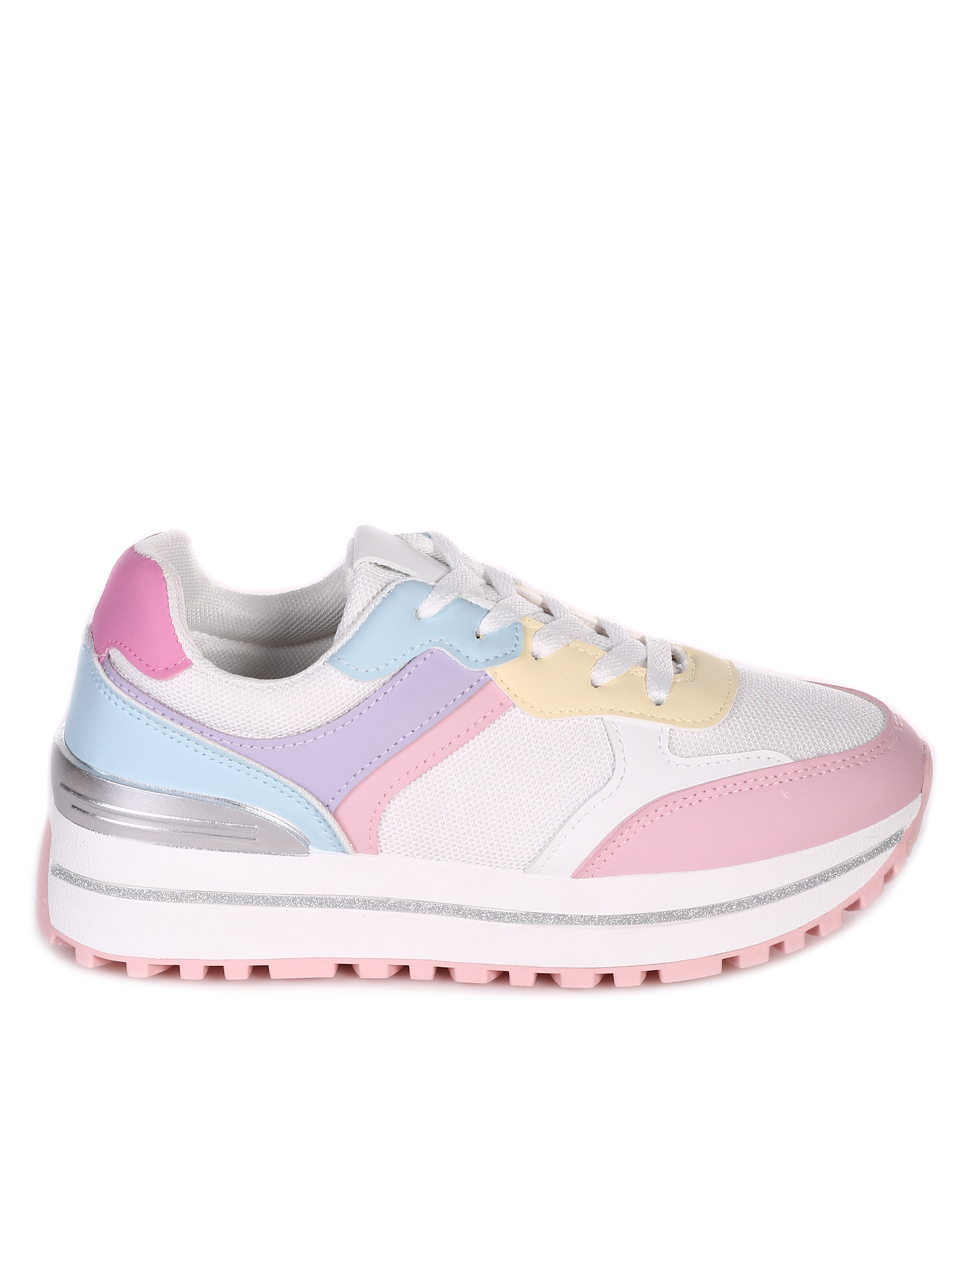 Ежедневни дамски комфортни обувки в бяло и розово 3U-23062 white/pink/purple